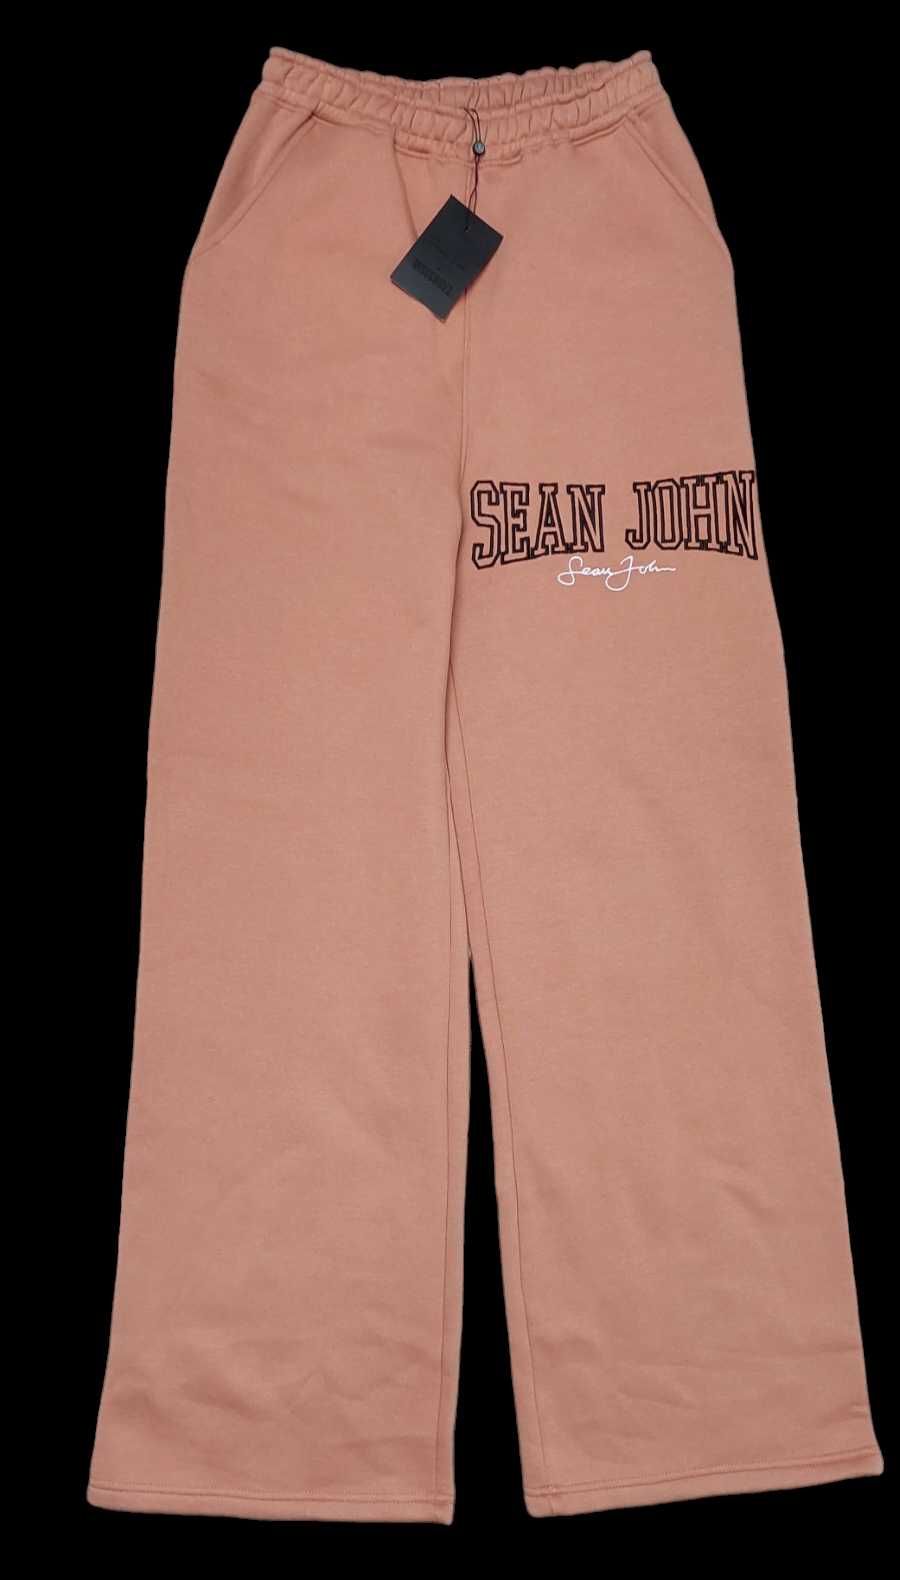 Spodnie dresowe z szerokimi nogawkami MISSGUIDED SEAN JOHN, R. 34